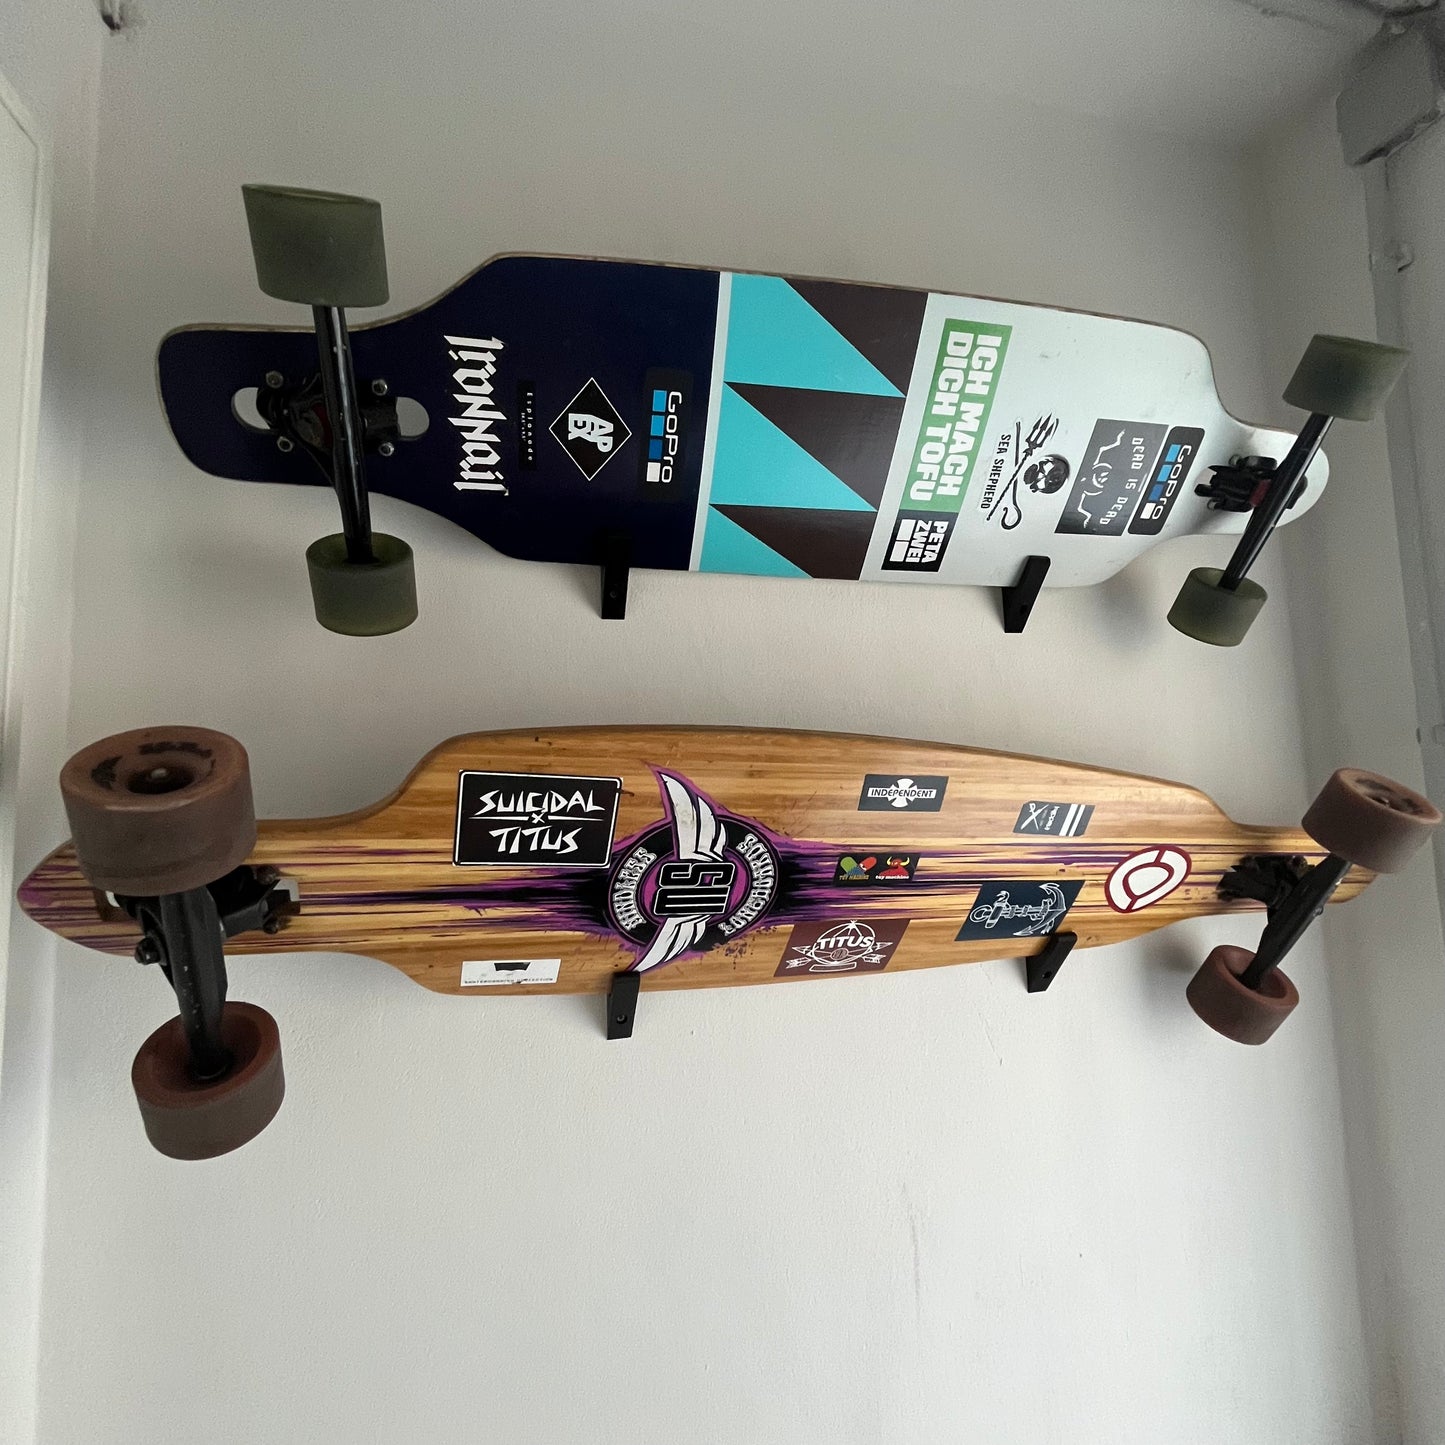 Wandhalter für Skateboards / Longboards